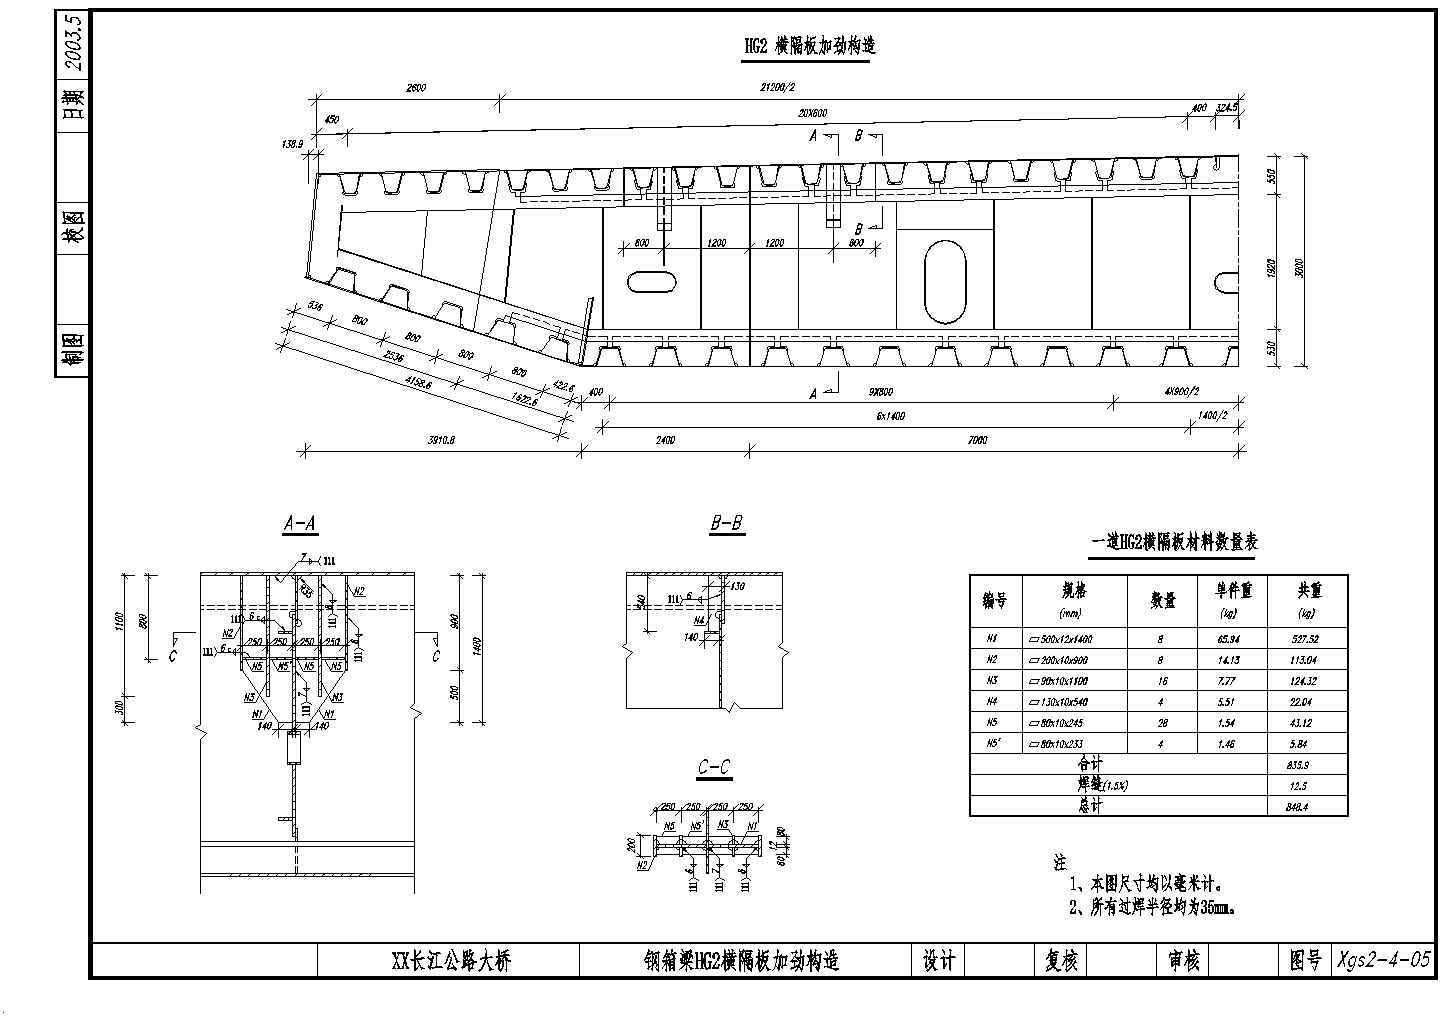 公路跨长江特大组合体系桥梁（变更）钢箱梁HG2横隔板加劲构造节点详图设计